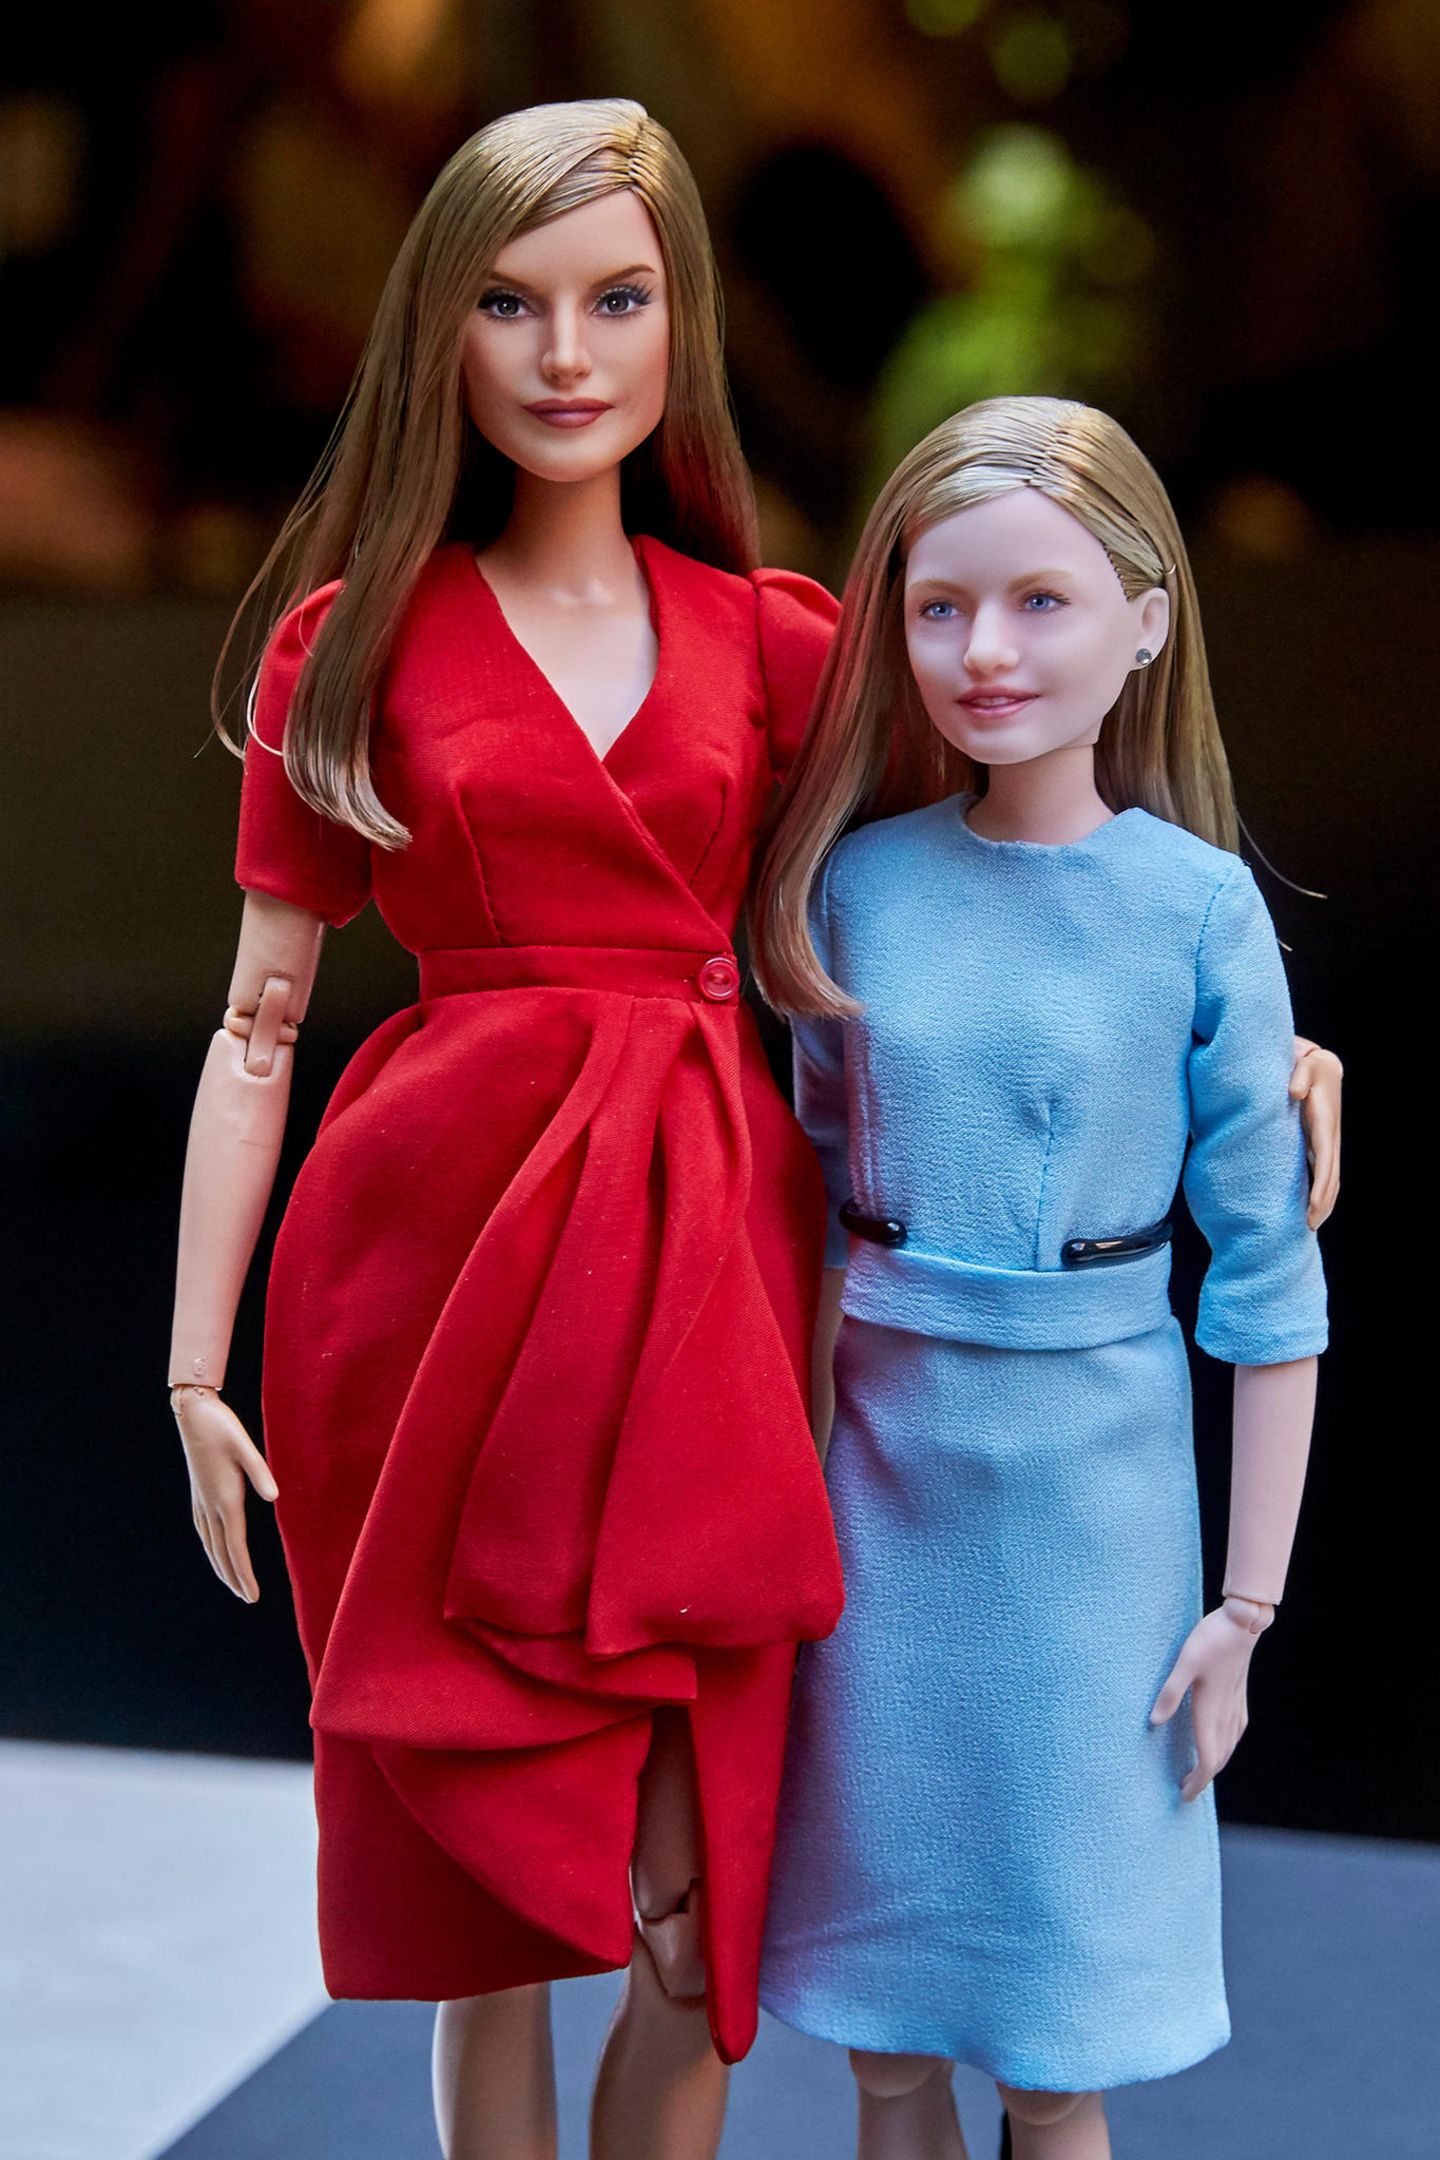 Königlicher "Nachwuchs" wurde auf der "Madrid Fashion Doll Show" vorgestellt: Königin Letizia und Tochter Prinzessin Leonor gibt es nun im "Barbie"-Format. Einen ganz so eleganten Auftritt wie die Originale können die beiden Plastik-Damen dann aber doch nicht hinlegen.